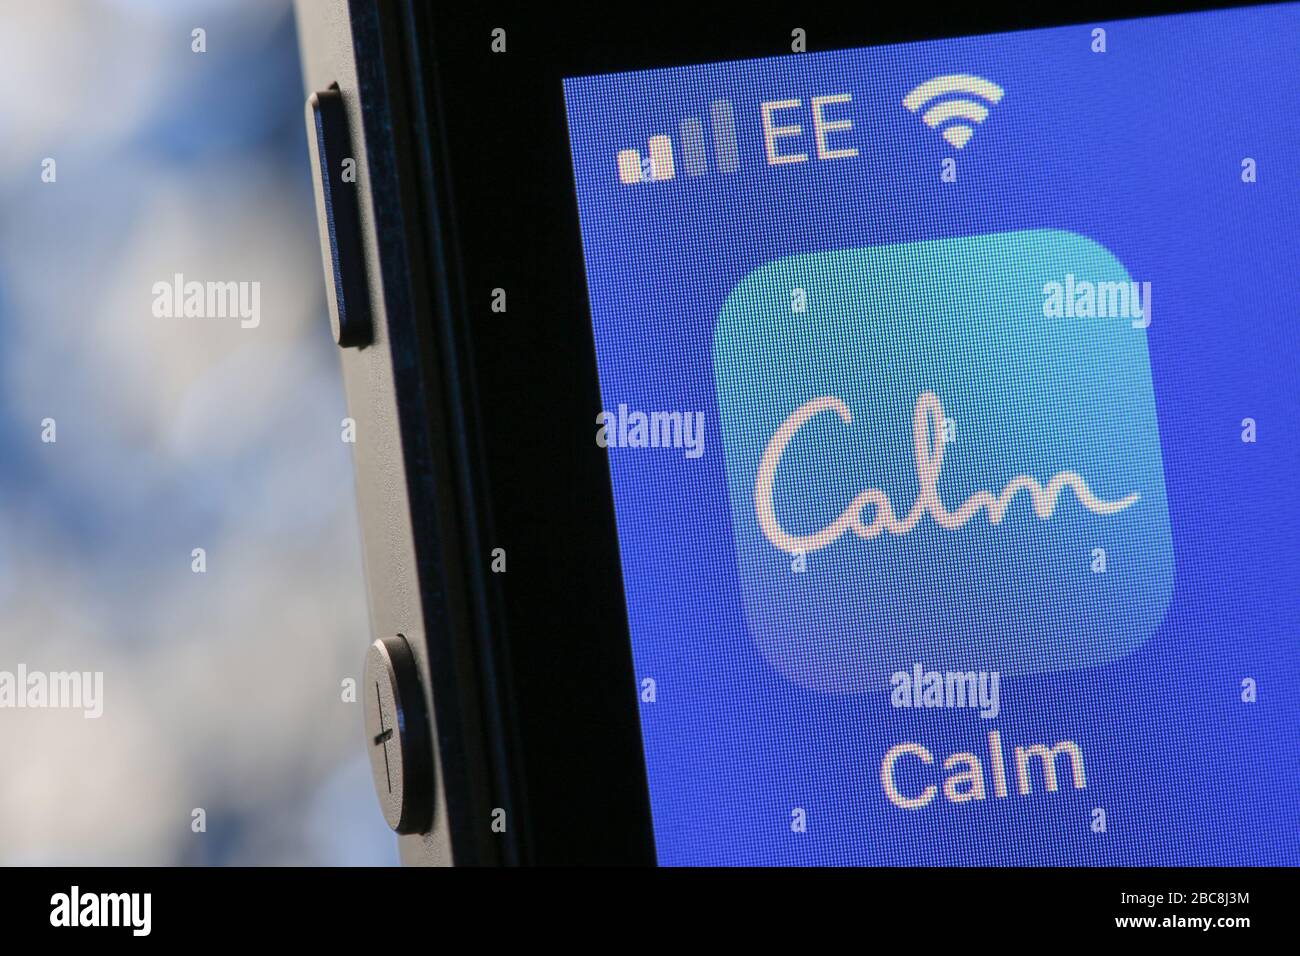 Calm meditation and sleep app on an iPhone. Stock Photo